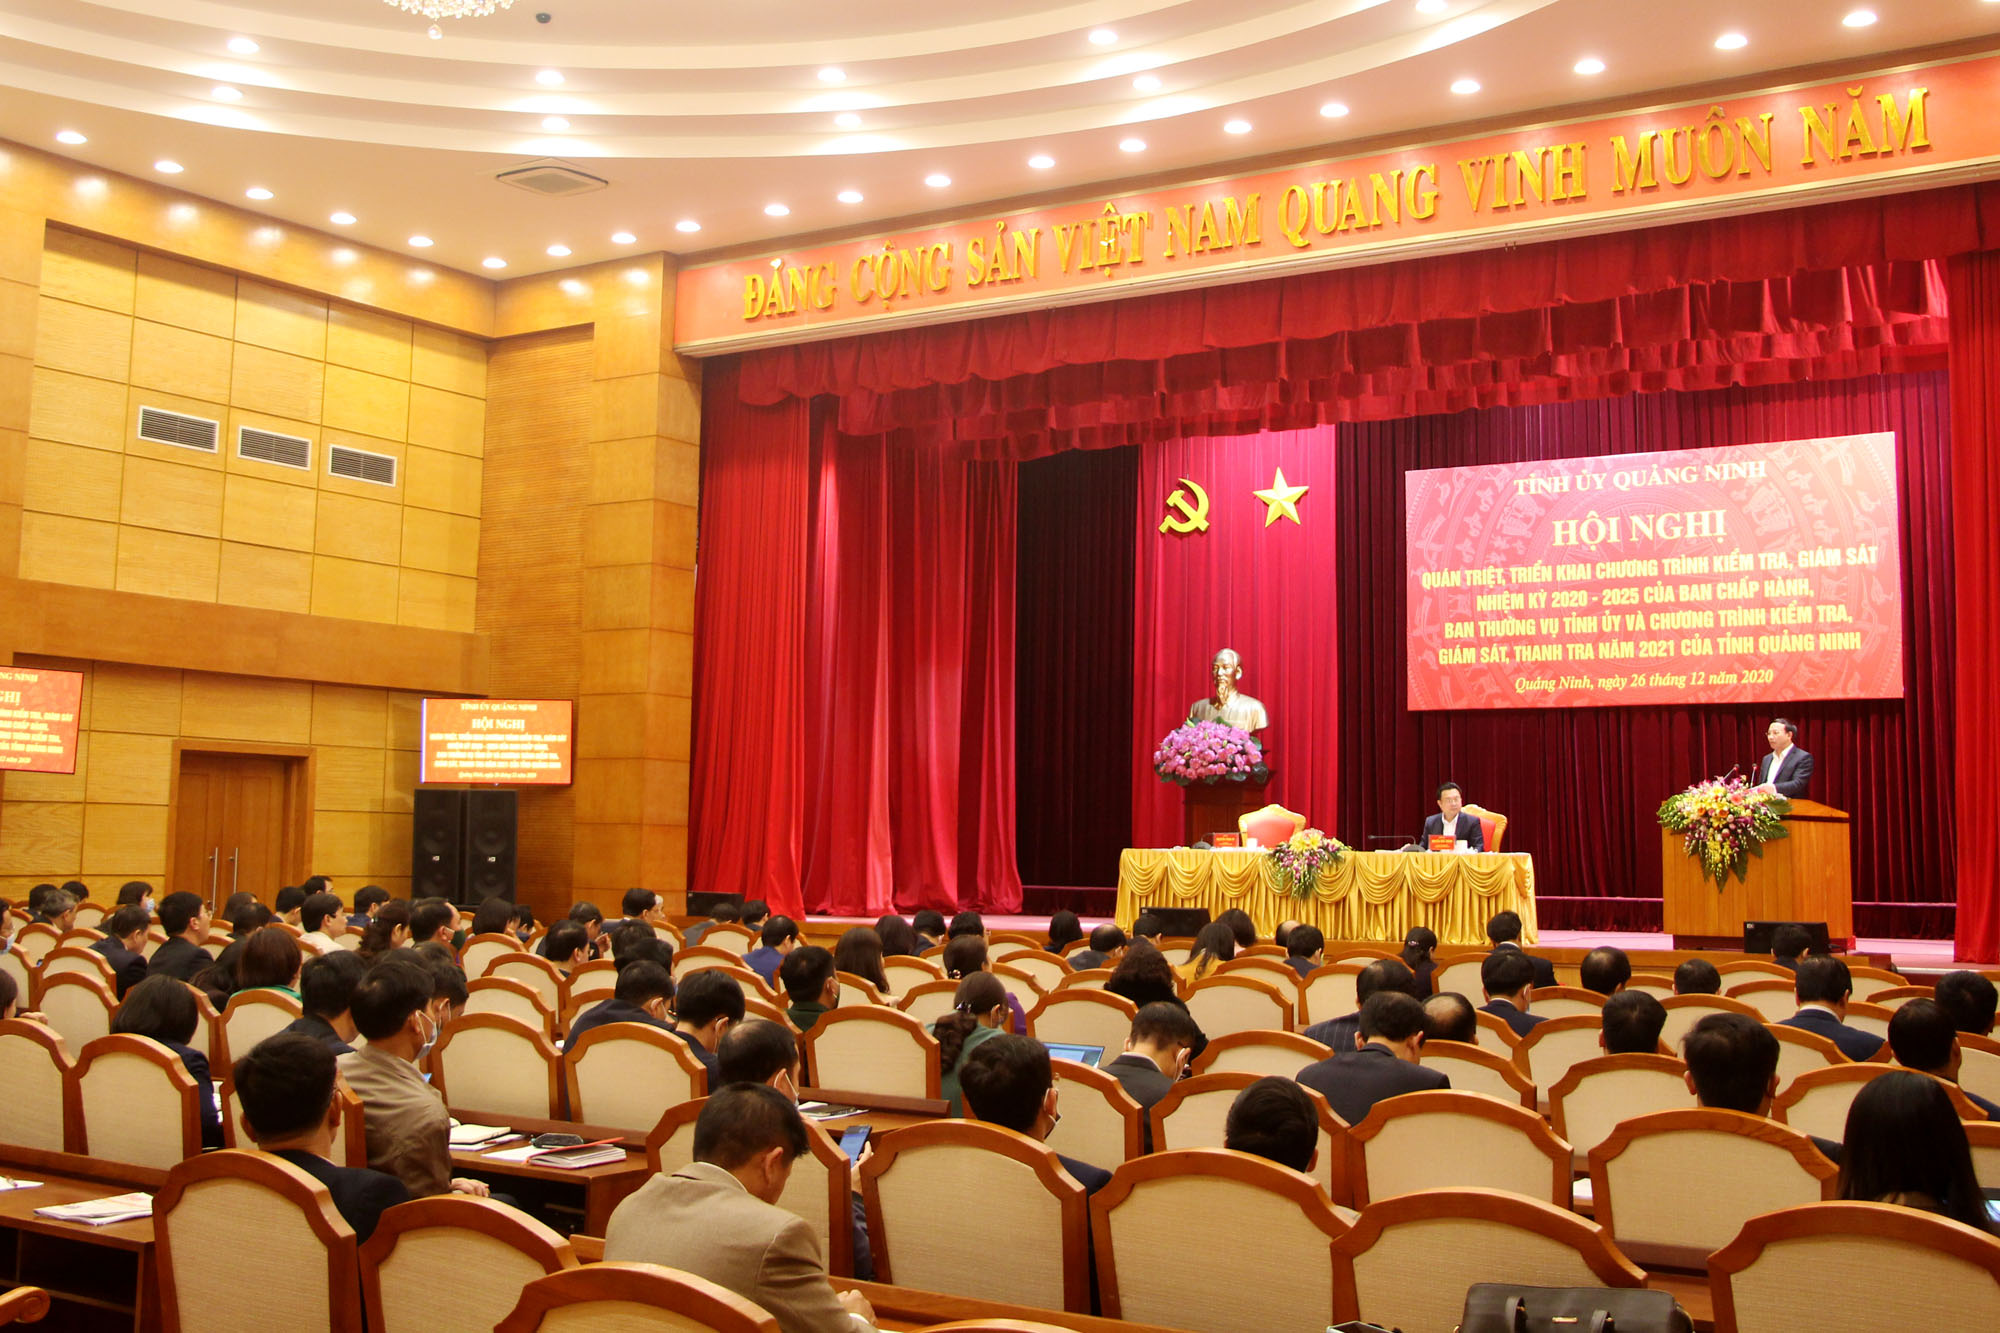 ỉnh ủy Quảng Ninh tổ chức hội nghị quán triệt, triển khai chương trình kiểm tra, giám sát nhiệm kỳ 2020-2025 của Ban Chấp hành, Ban Thường vụ Tỉnh ủy và chương trình kiểm tra, giám sát, thanh tra năm 2021 của tỉnh Quảng Ninh.